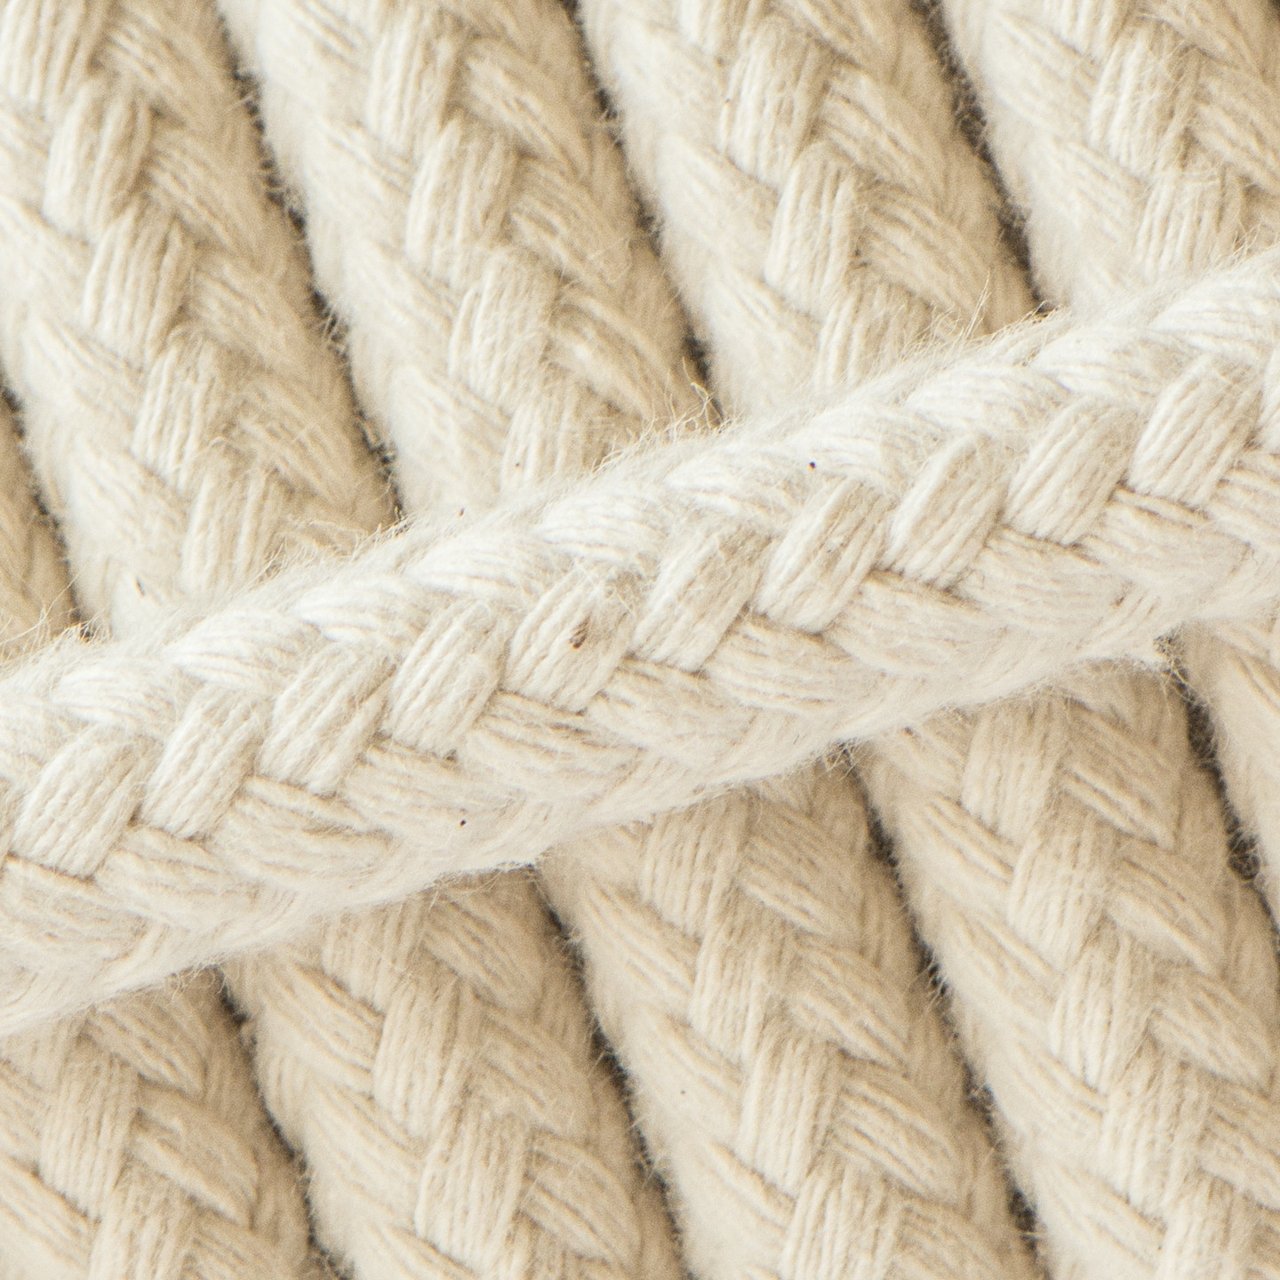 Länge 25 Meter geflochten mit Kern Baumwollseil Seil aus Baumwolle Ø 10mm 